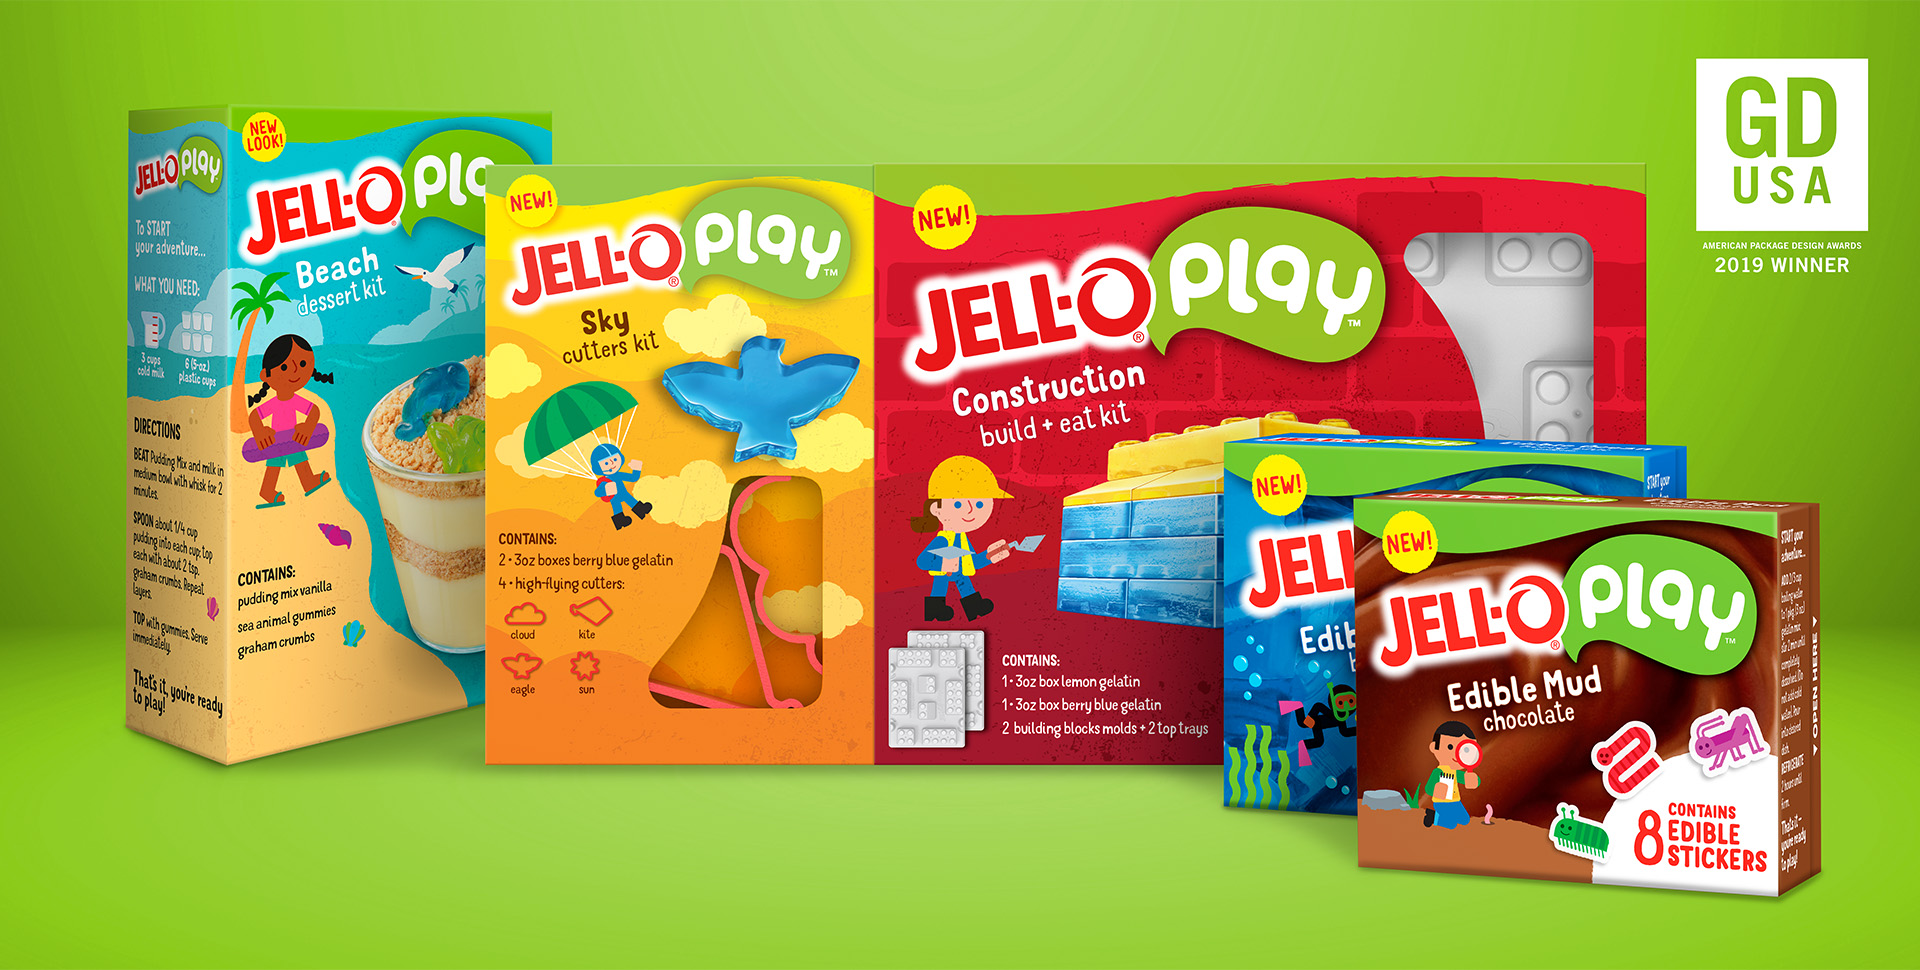 Kraft Heinz – Jell-O Play